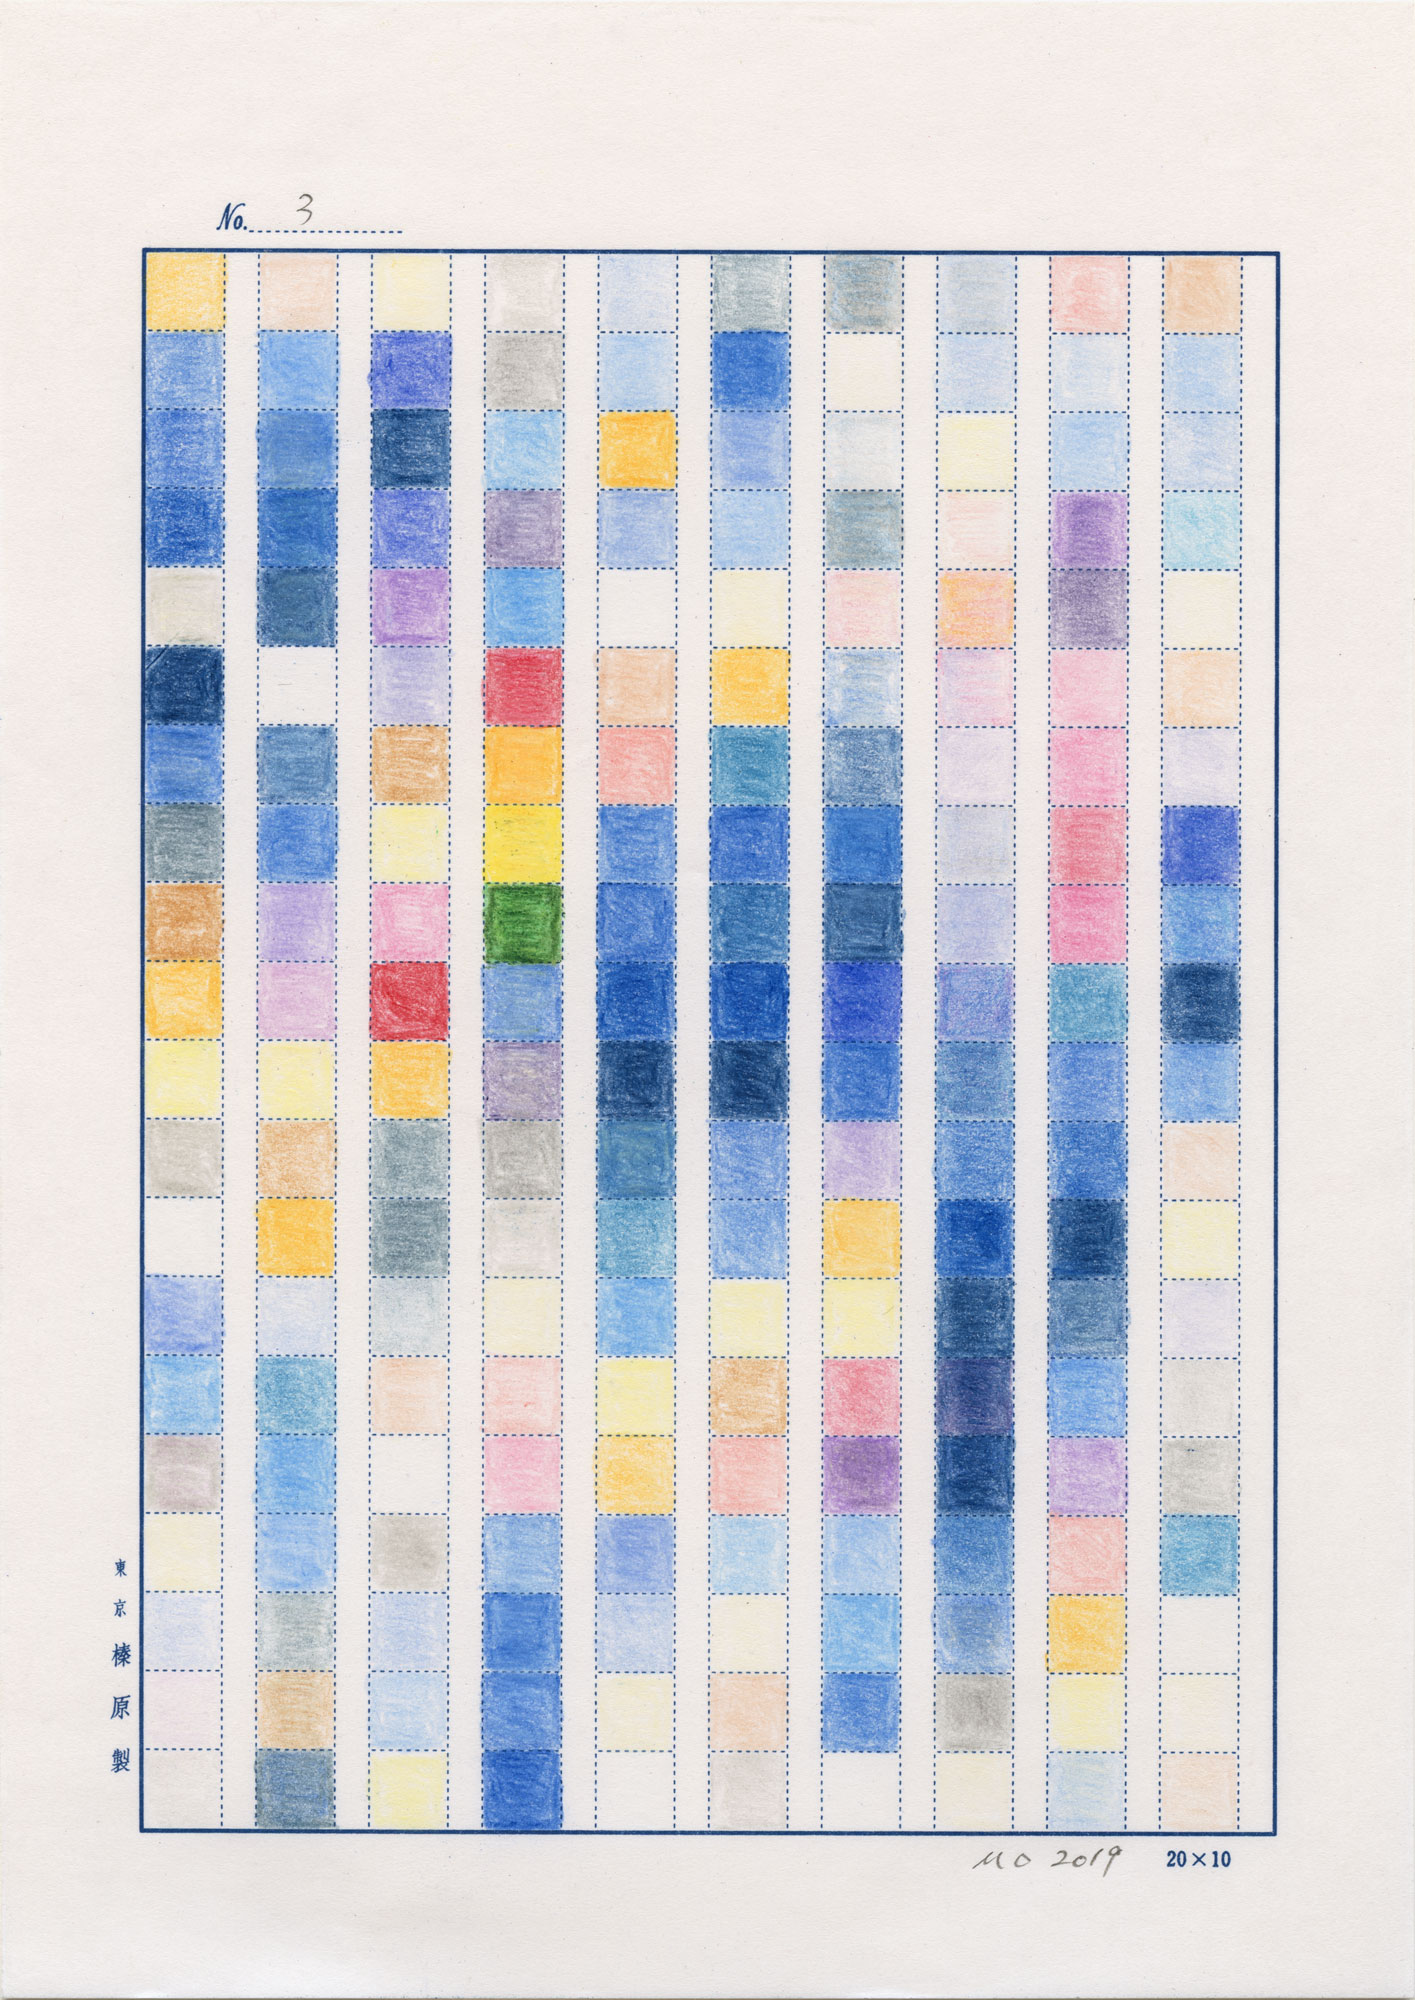    日日是好日   (No.3, 1983-2019, an ongoing project), color pencil on manuscript paper and international mail, 9-49/64” x 6-15/16” (24.8 cm x 17.6 cm), sent to Guangzhou, Guangdong, China from New York NY, USA 